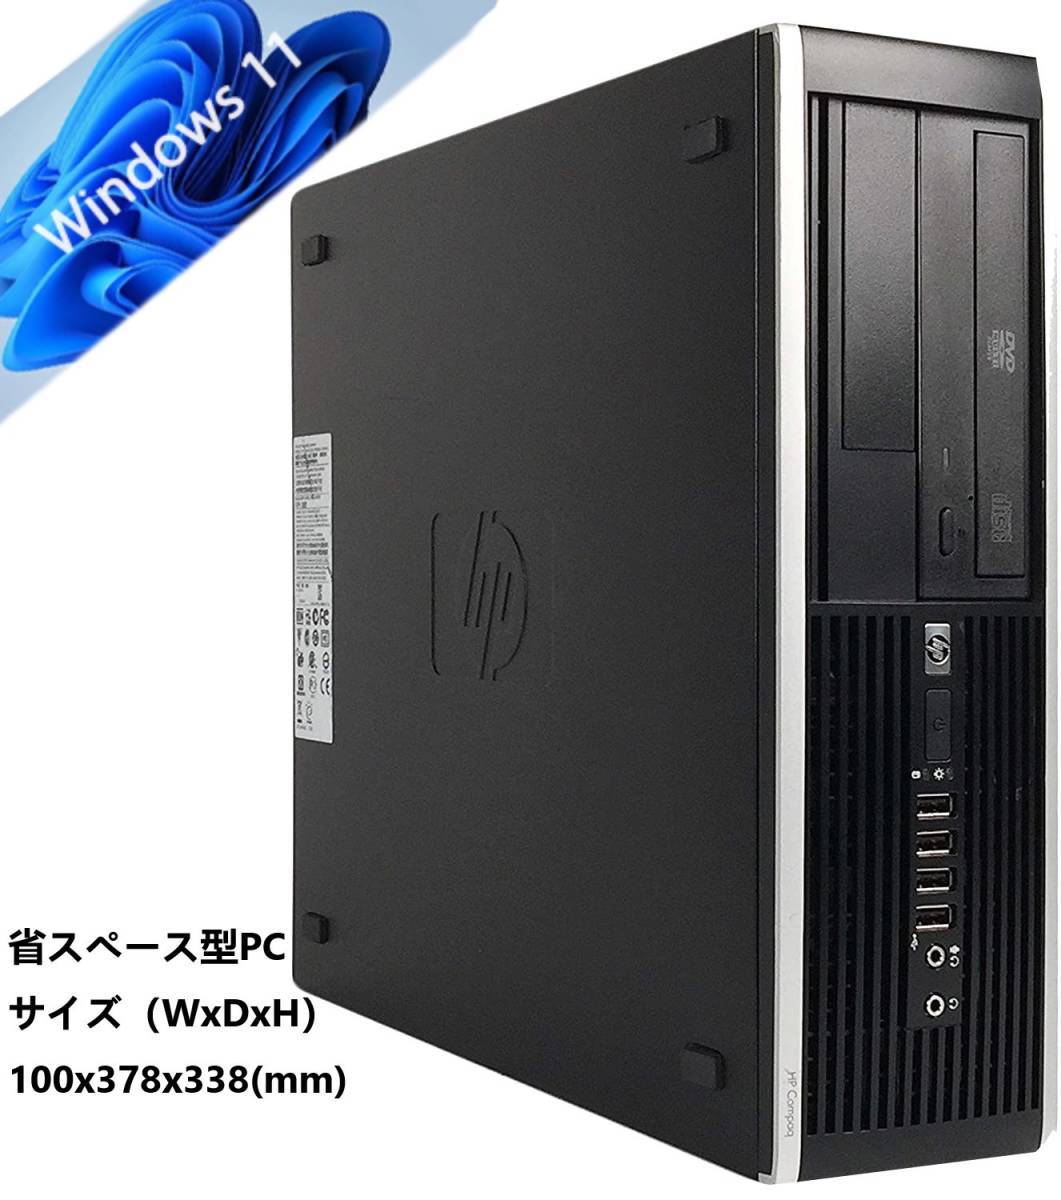 美品 3.20GHz i5-3470 Core SFF 6300 Pro Compaq HP 6GB Win7 500GB